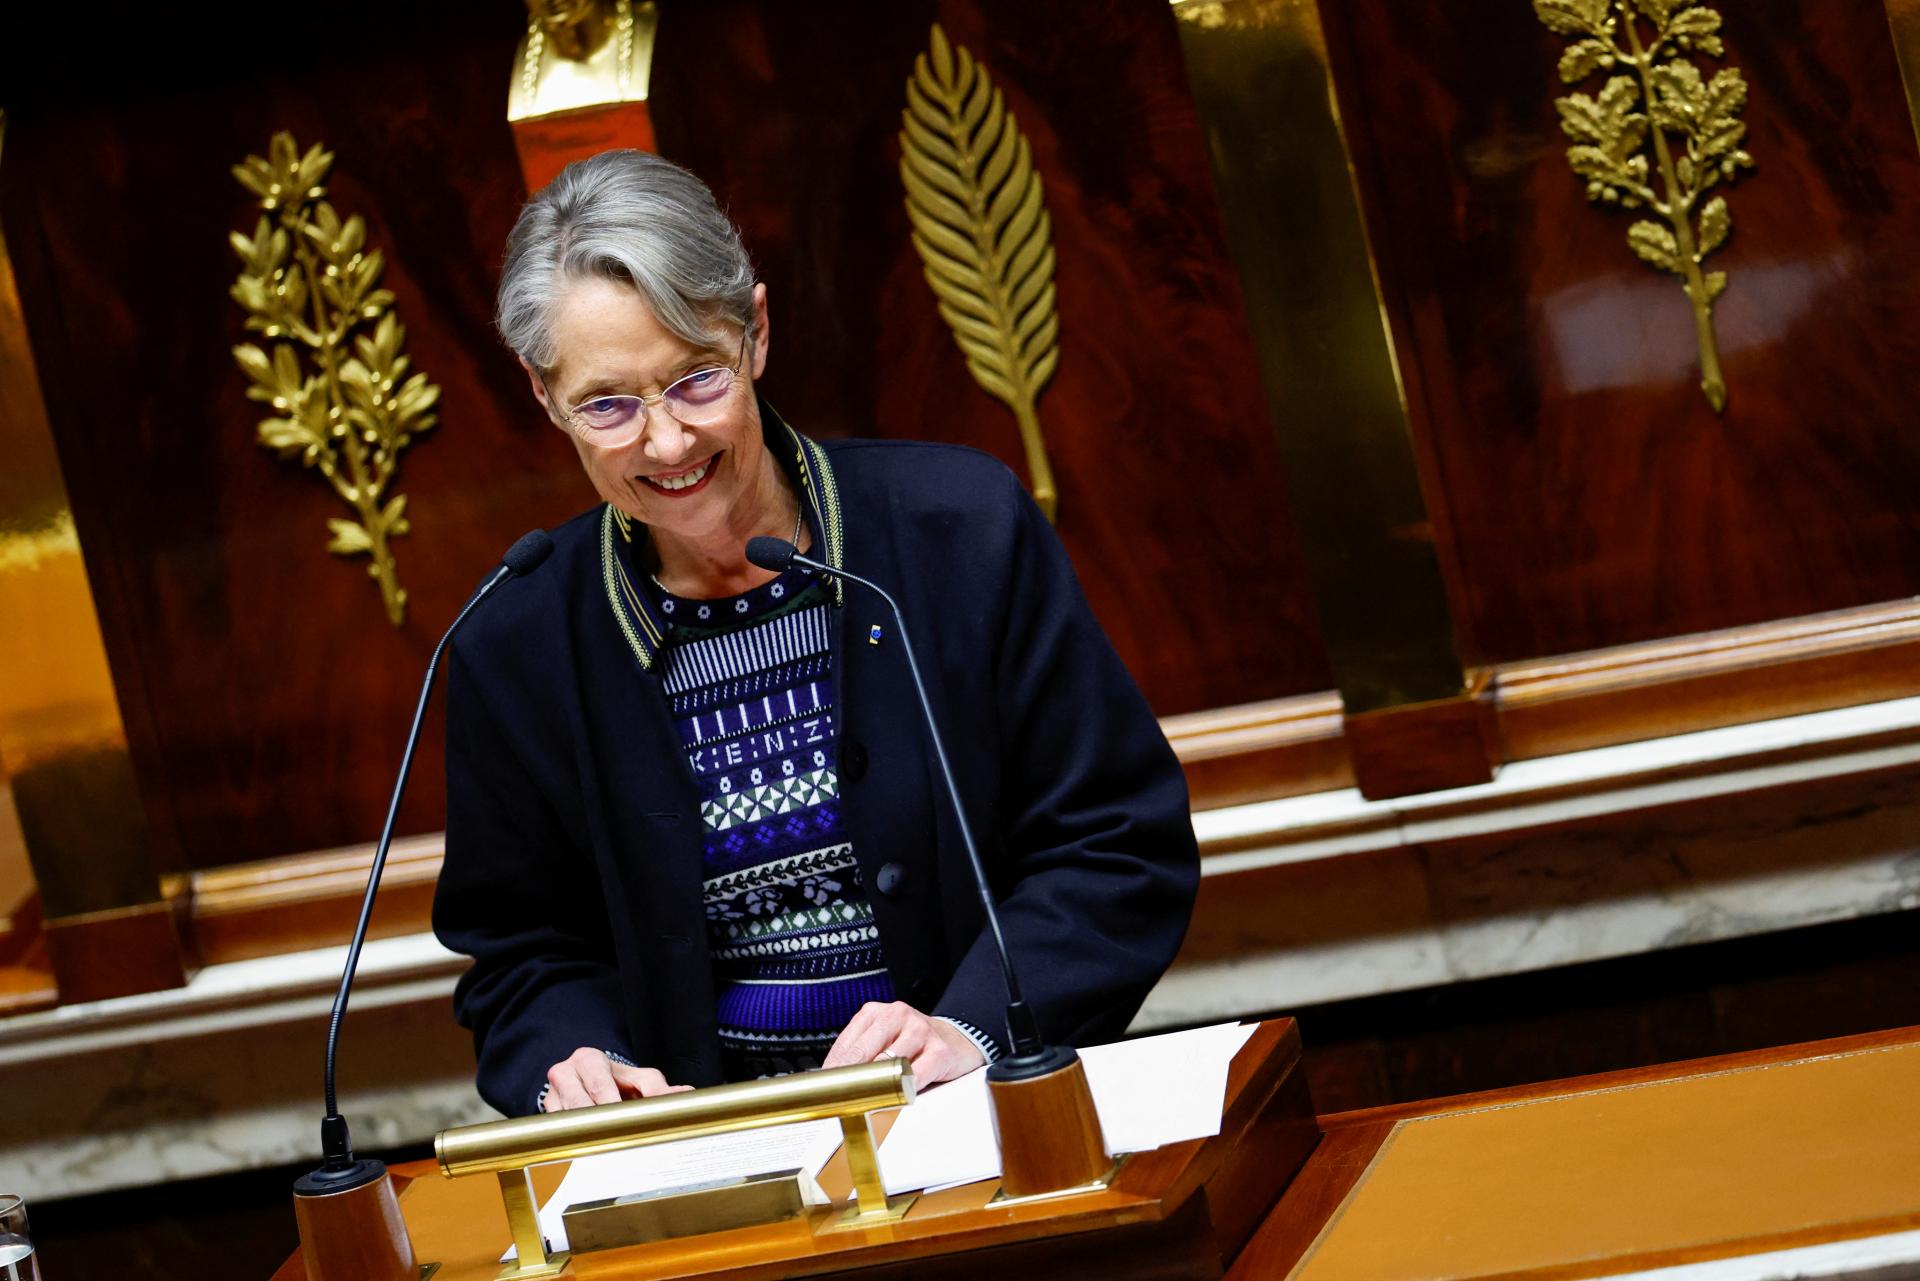 Le Parlement français approuvera la réforme des retraites, affirme le Premier ministre.  Cependant, le soutien dans la chambre basse n’est pas certain